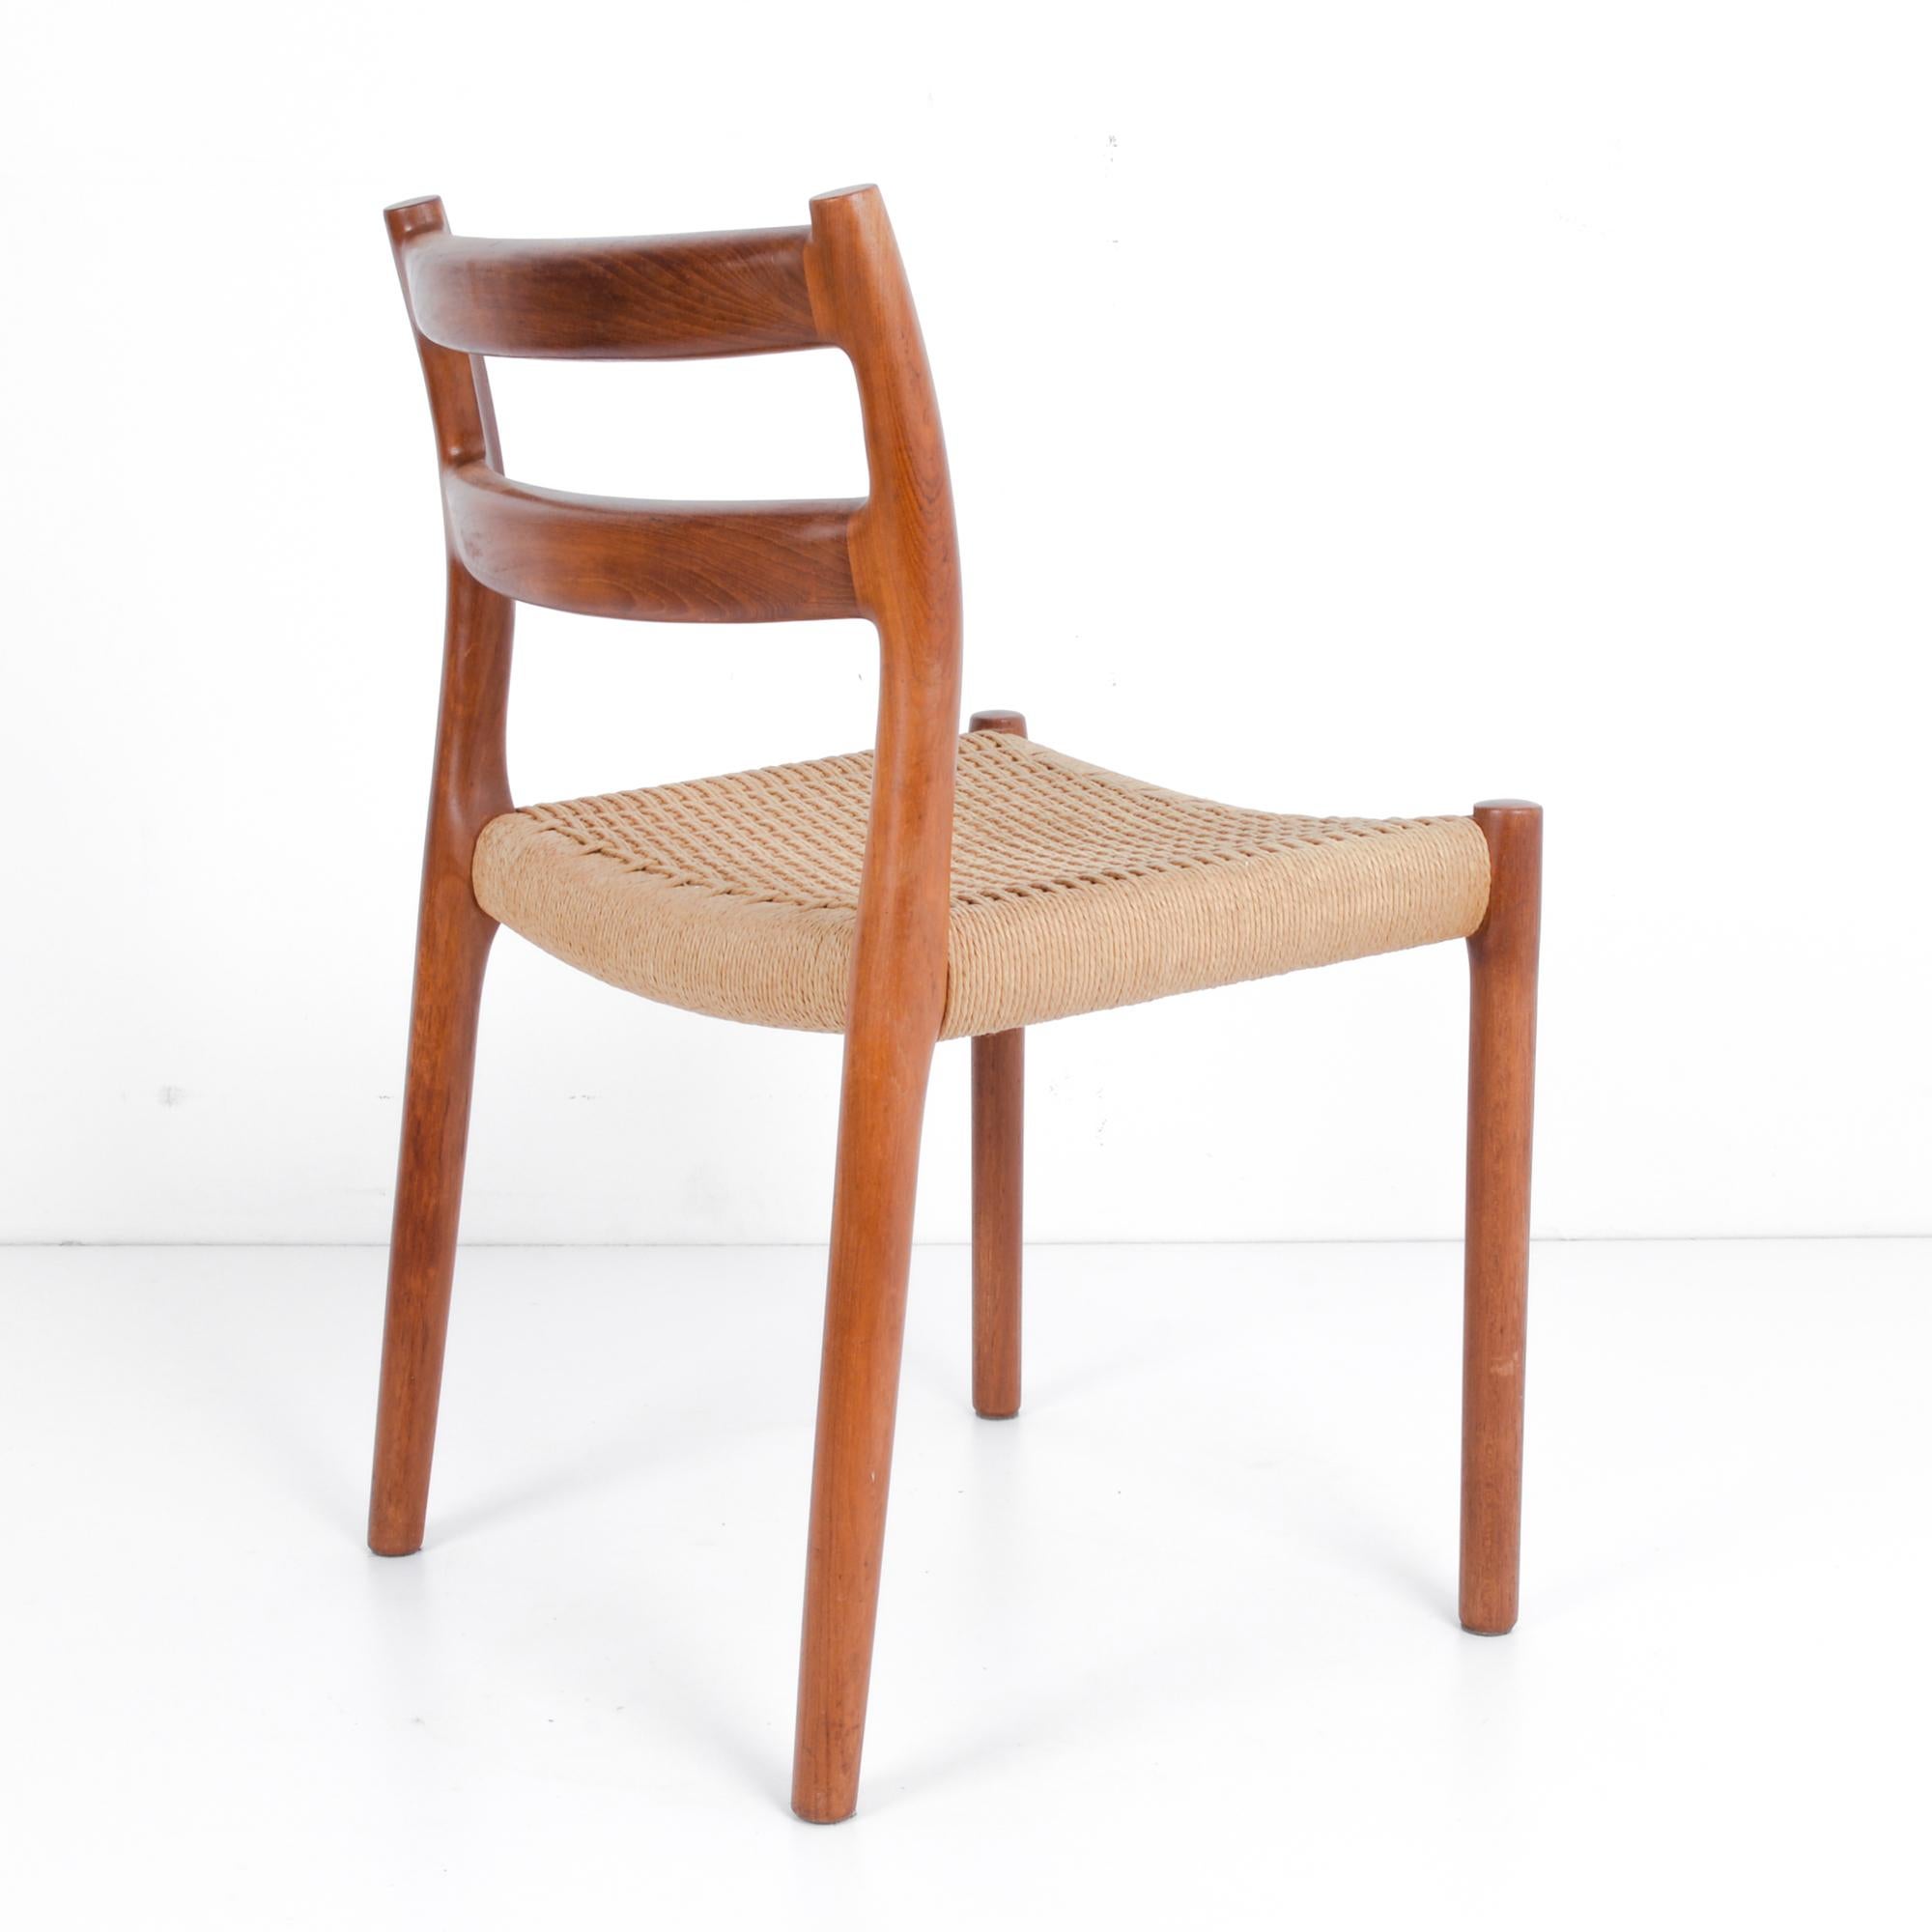 Mid-20th Century 1960s Danish Arne Hovmand-Olsen Teak Chair